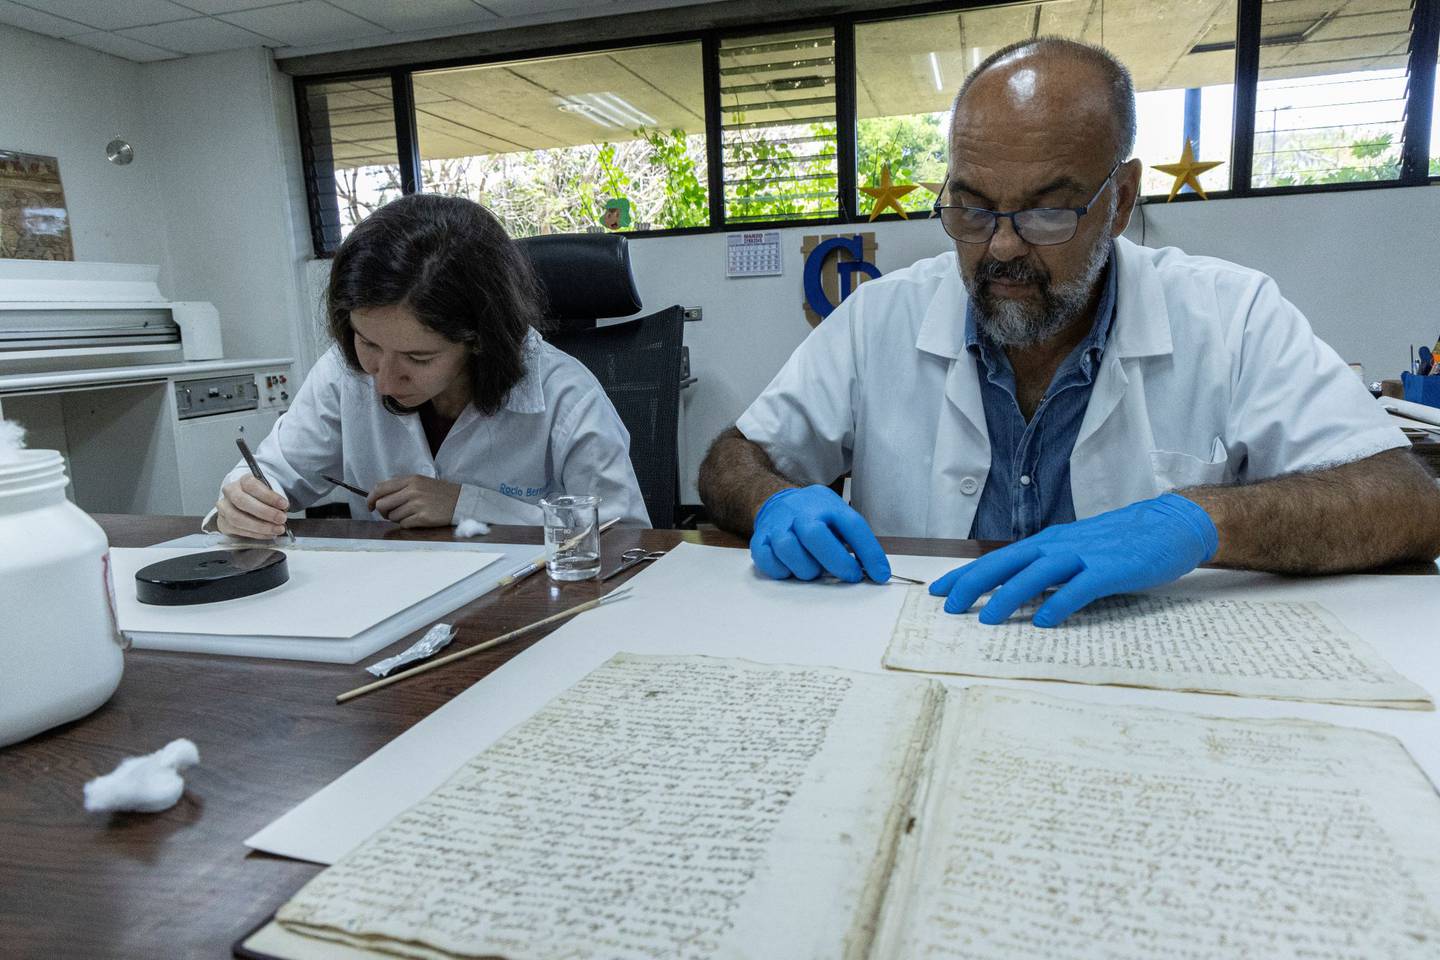 Los restauradores Rocío Bermúdez, de la UCR y Carlos Pacheco trabajan sobre los folios.

Fotografía: Archivo Nacional